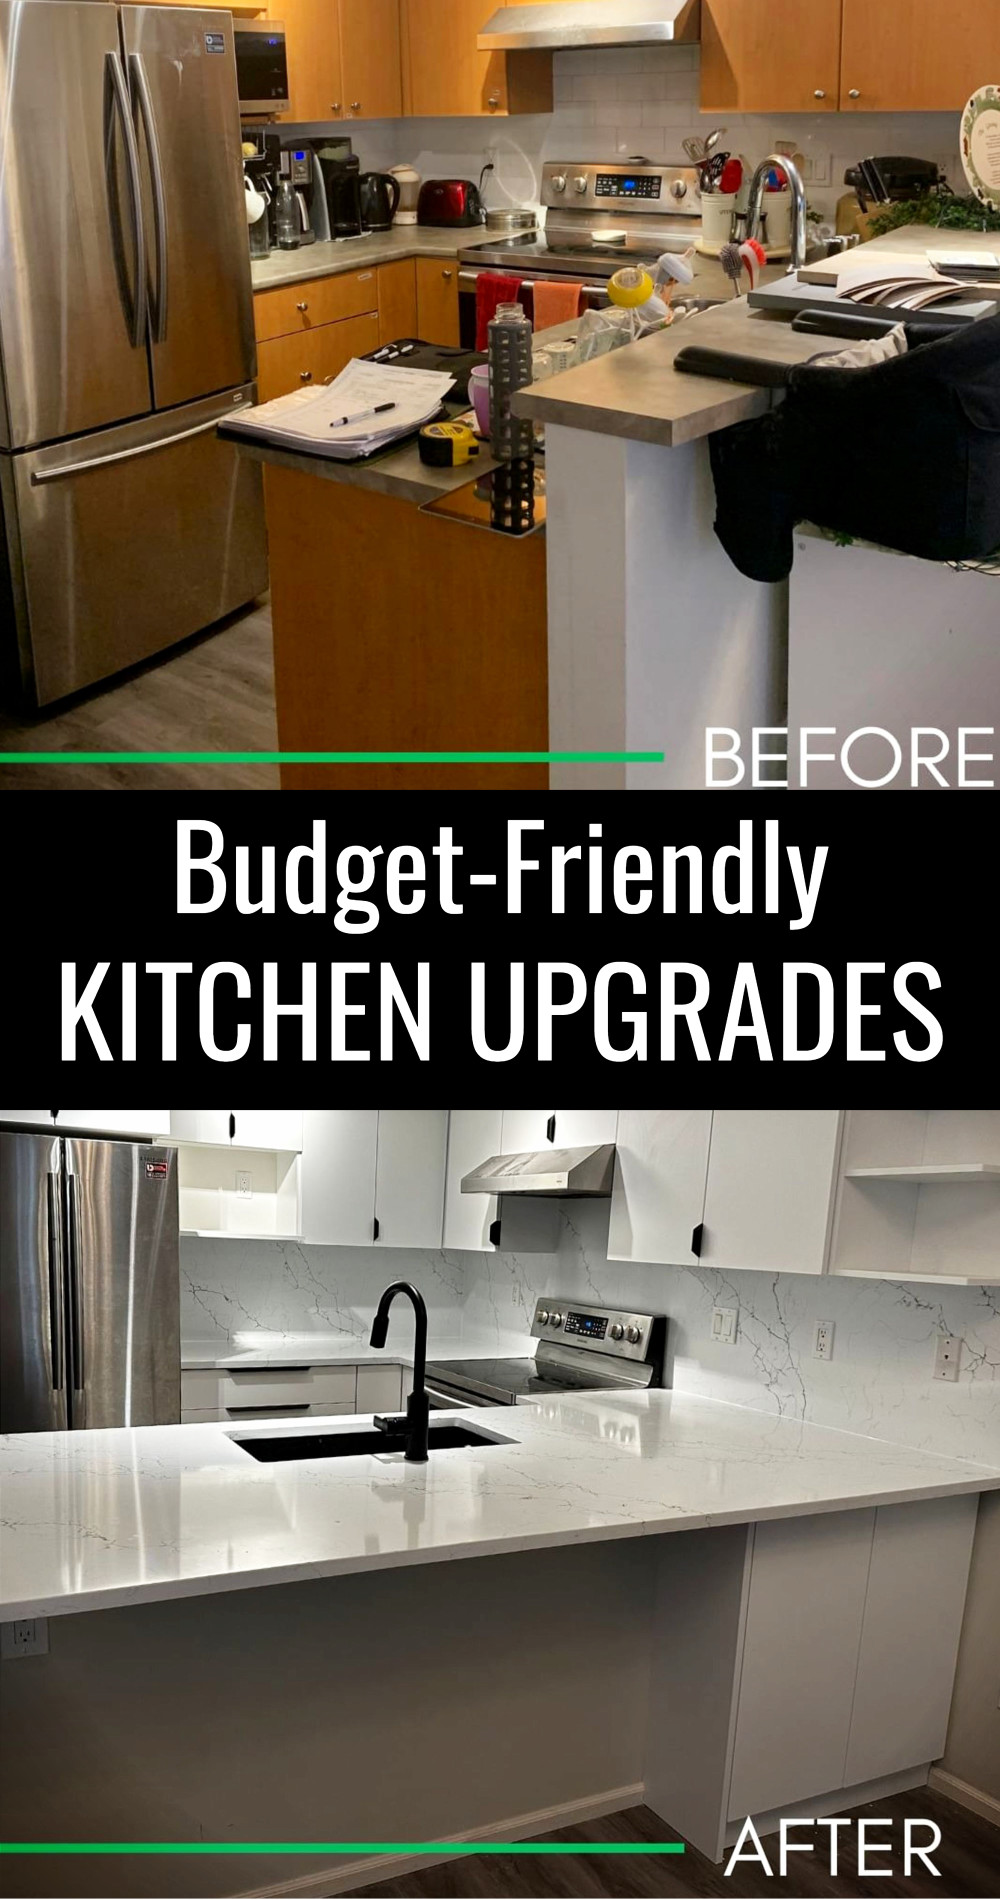 Budget-friendly kitchen upgrades